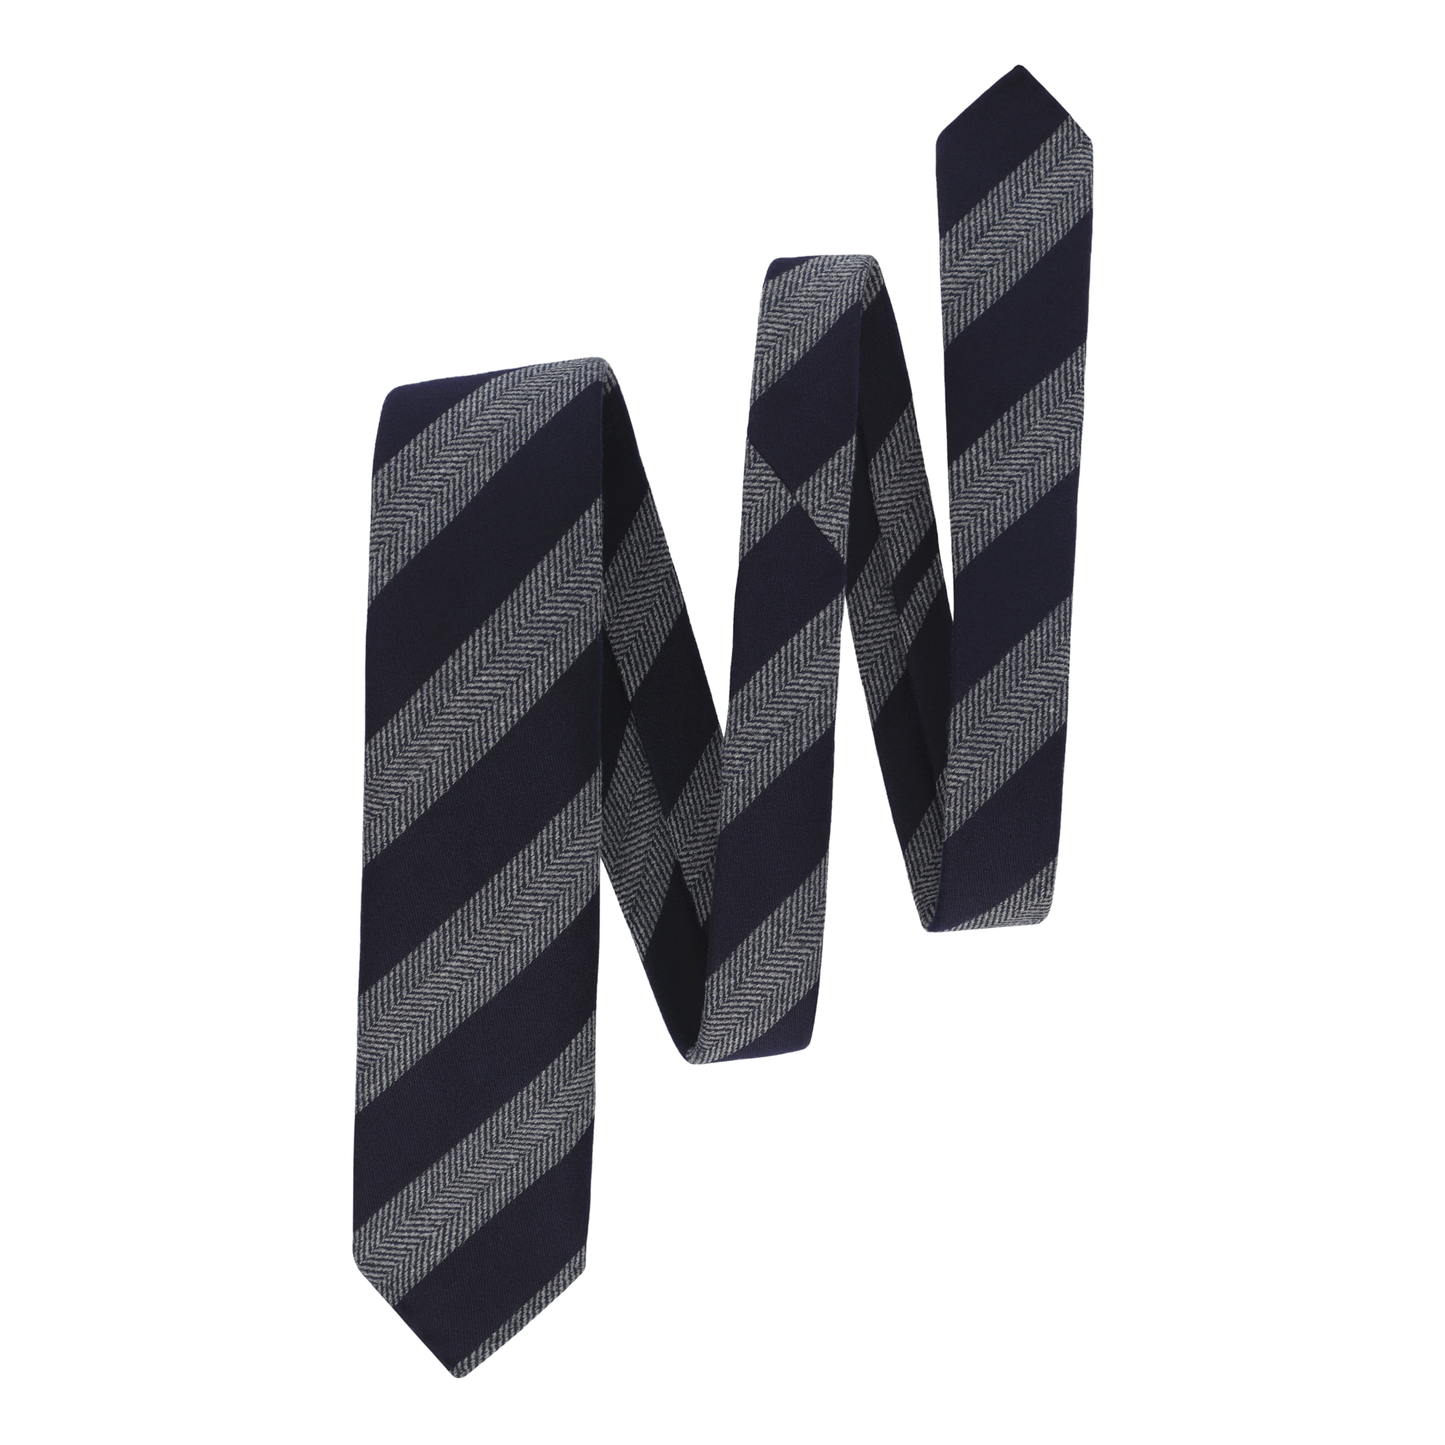 Regimental Herringbone Tie in Navy Blue and Grey